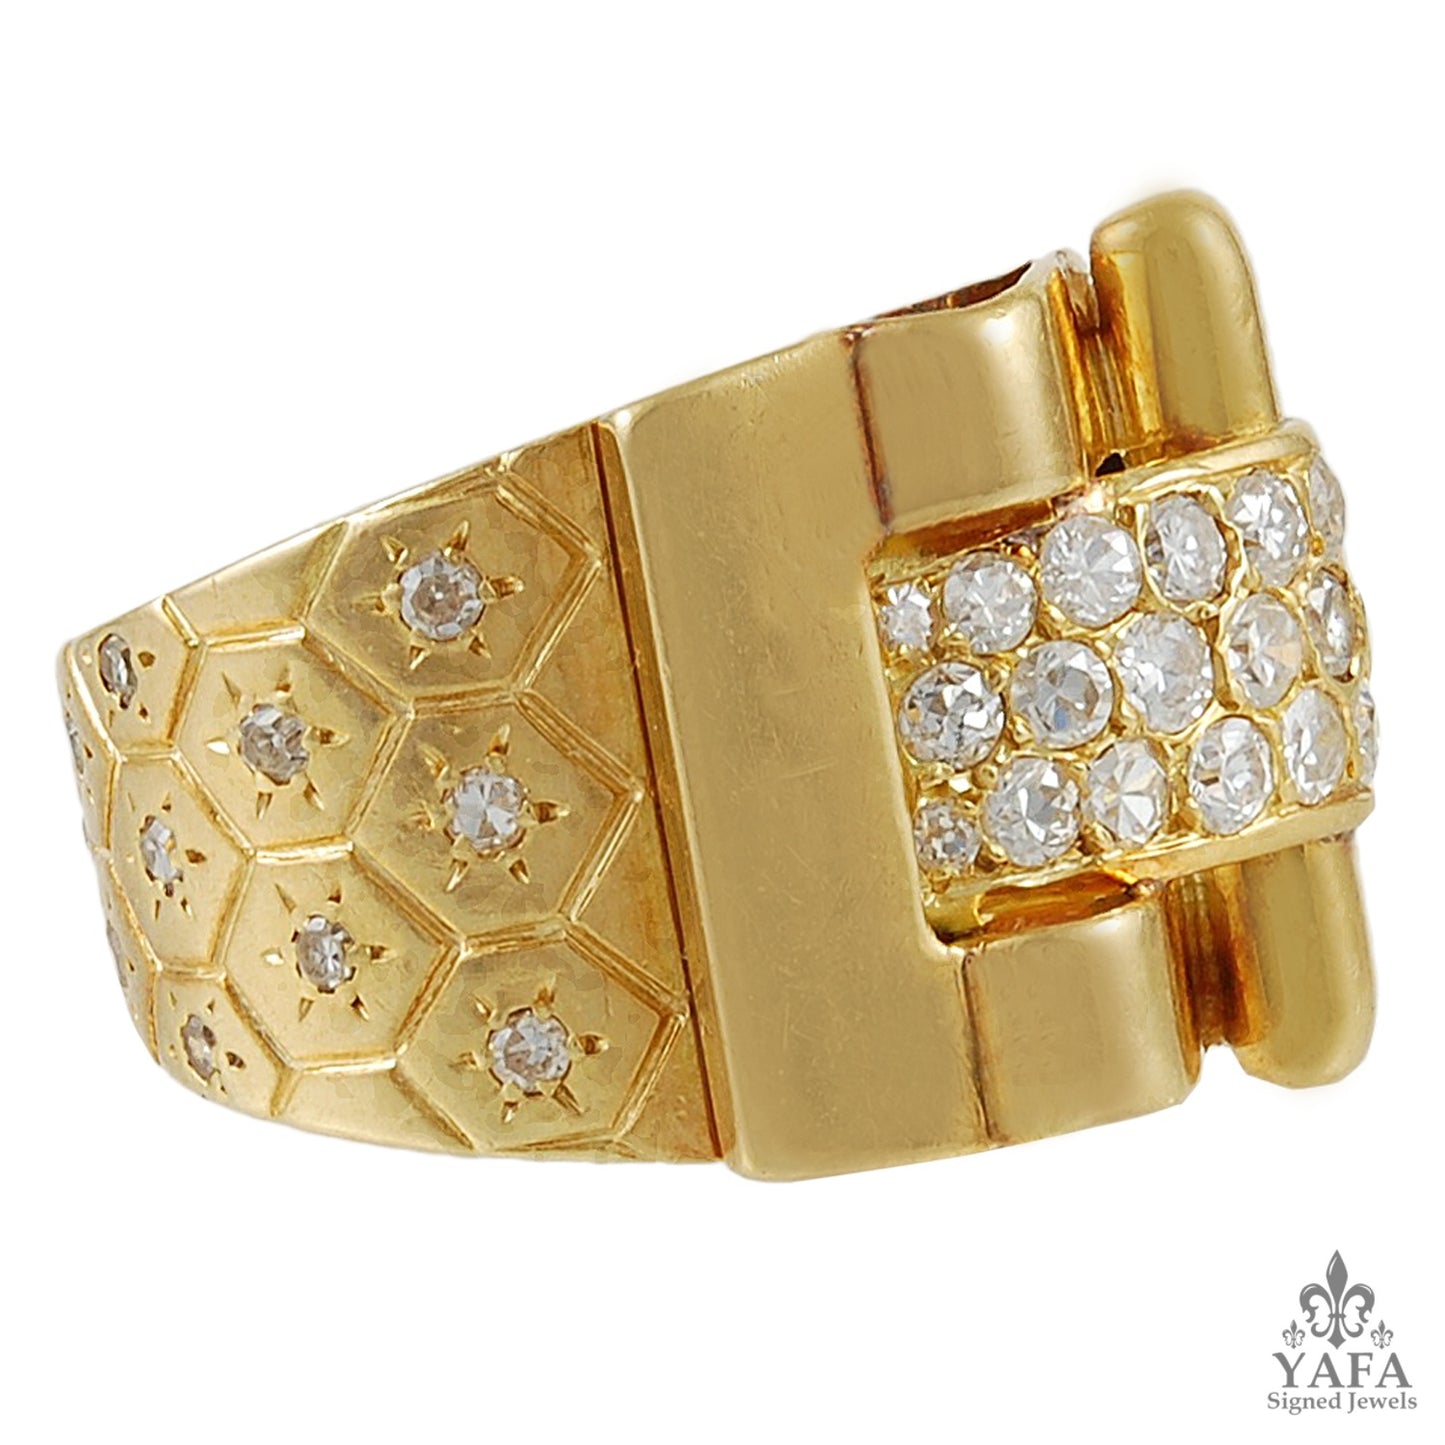 VAN CLEEF & ARPELS Diamond Ludo Ring